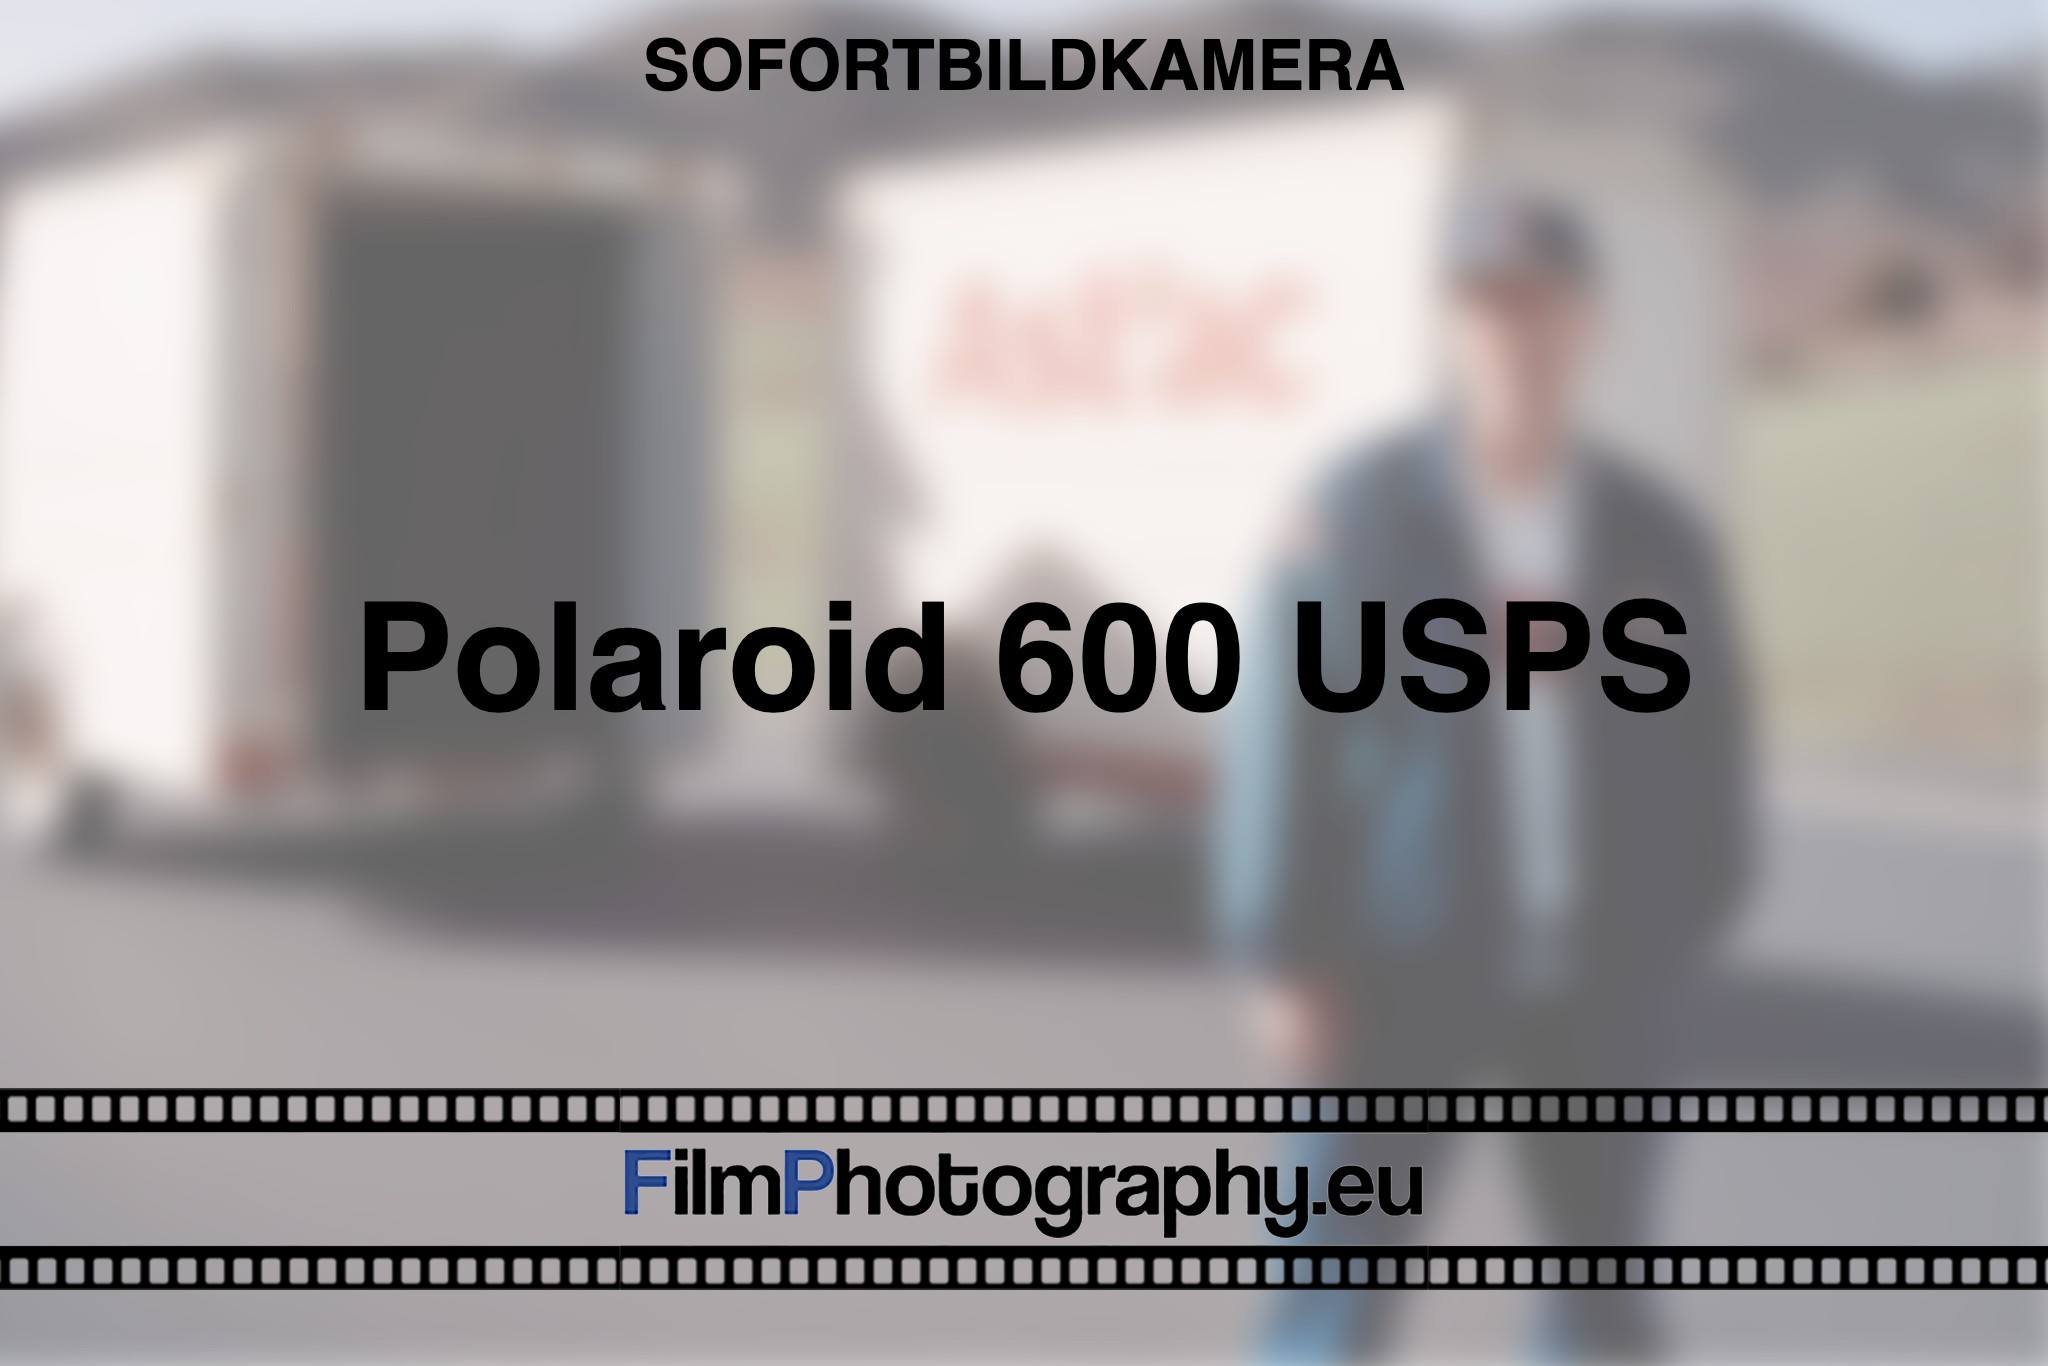 polaroid-600-usps-sofortbildkamera-fp-bnv